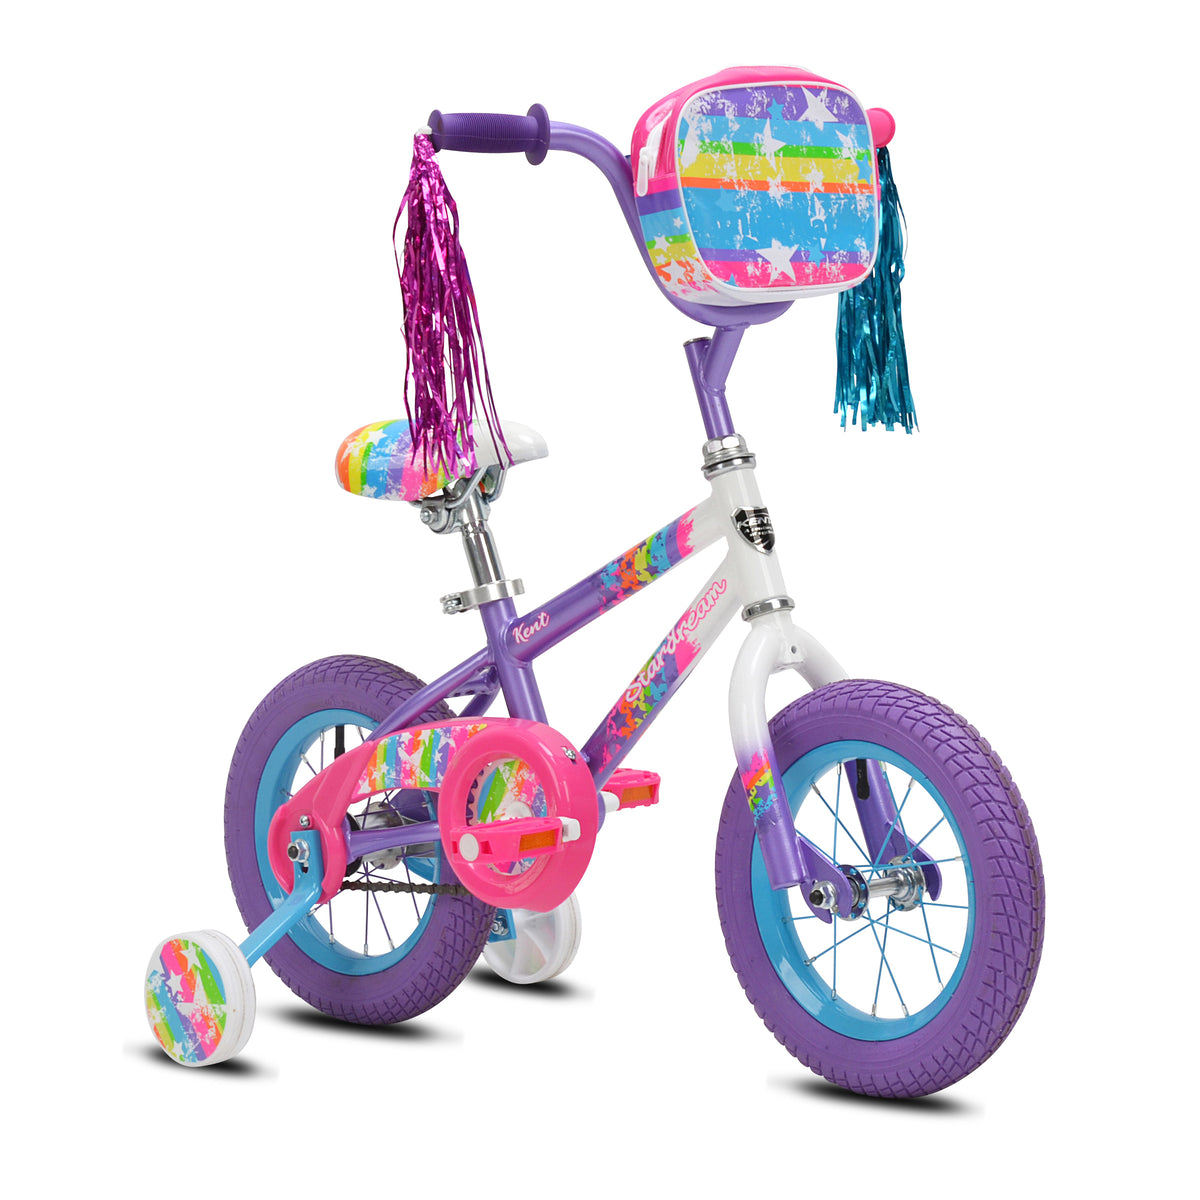 12" Kent Star Dream | Cruiser Bike for Kids Ages 2-4